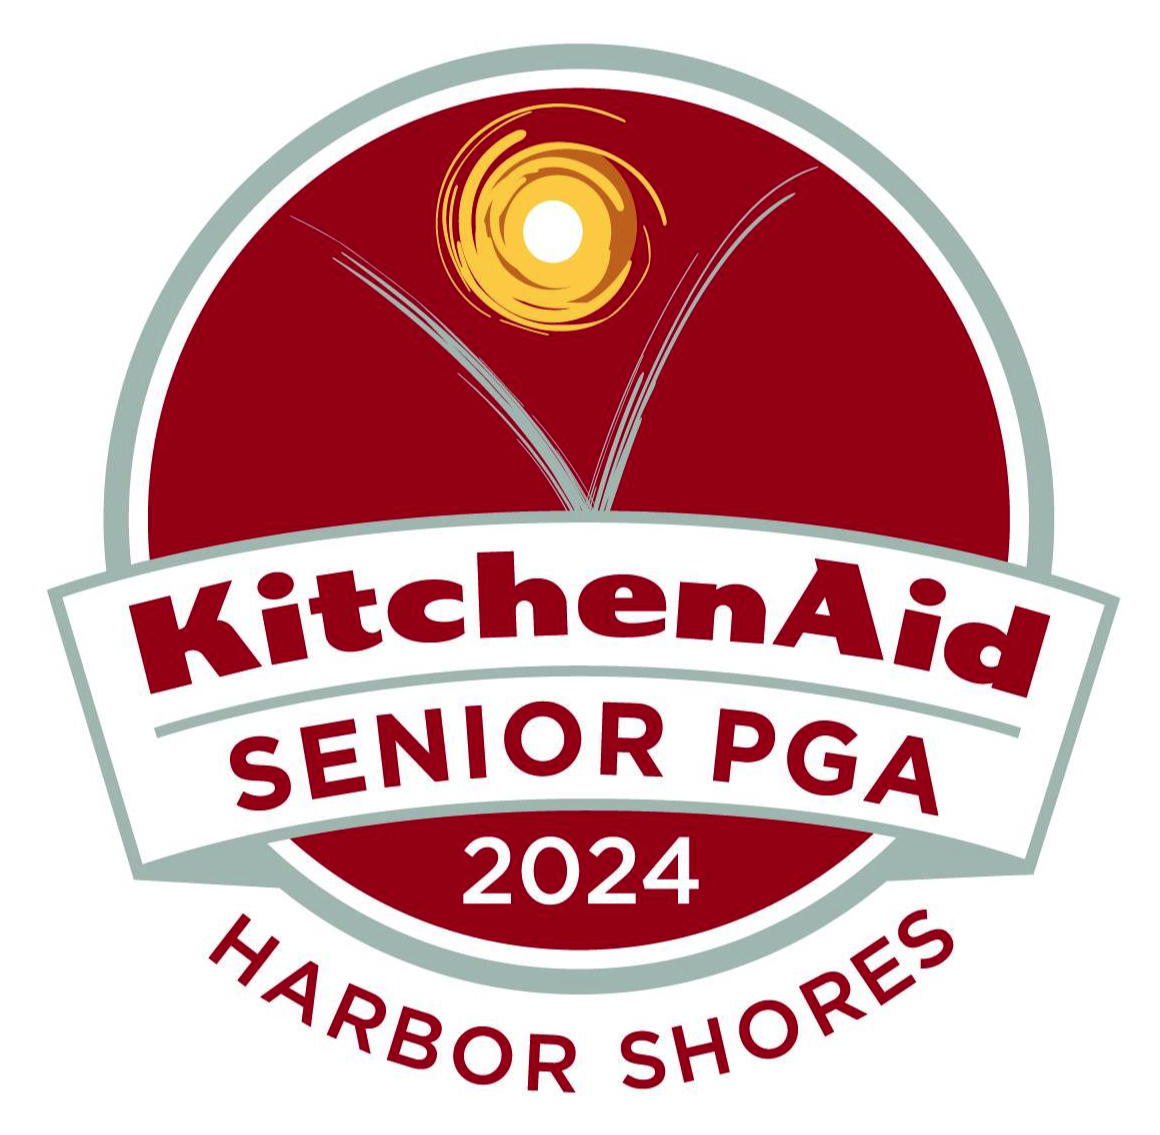 KitchenAid Senior PGA Championship Logo